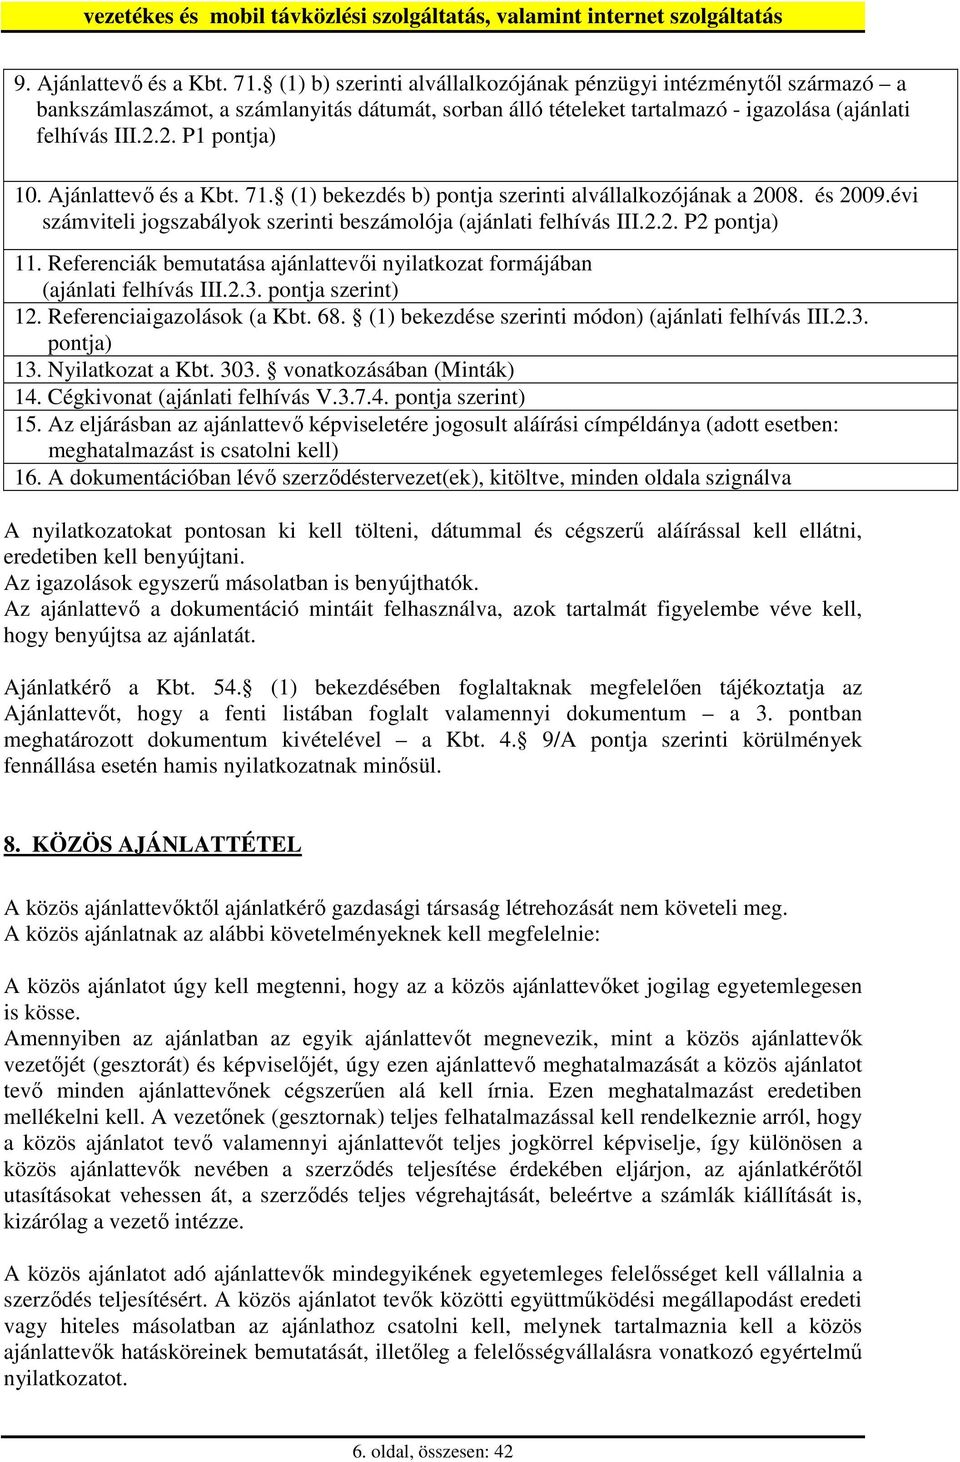 Ajánlattevı és a Kbt. 71. (1) bekezdés b) pontja szerinti alvállalkozójának a 2008. és 2009.évi számviteli jogszabályok szerinti beszámolója (ajánlati felhívás III.2.2. P2 pontja) 11.